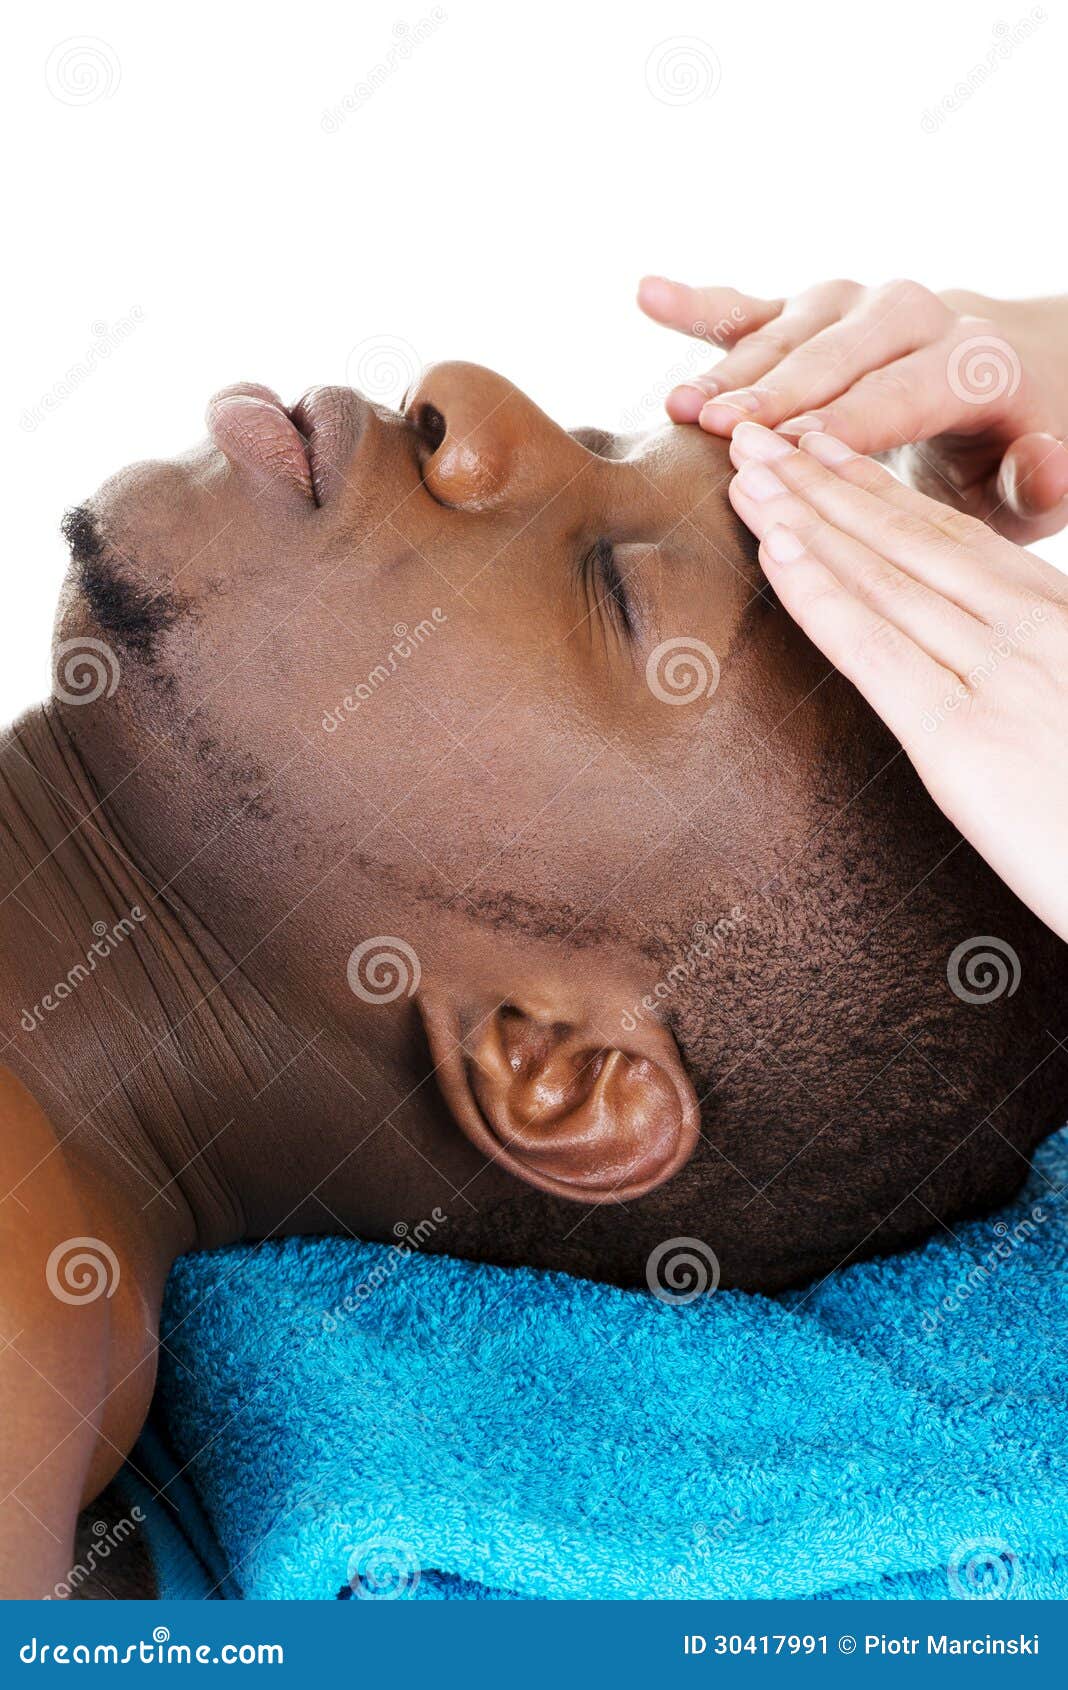 Recaiving Kopfmassage des schwarzen Mannes am Badekurort. Recaiving Kopfmassage des schwarzen Mannes am Badekurort, lokalisiert auf Weiß